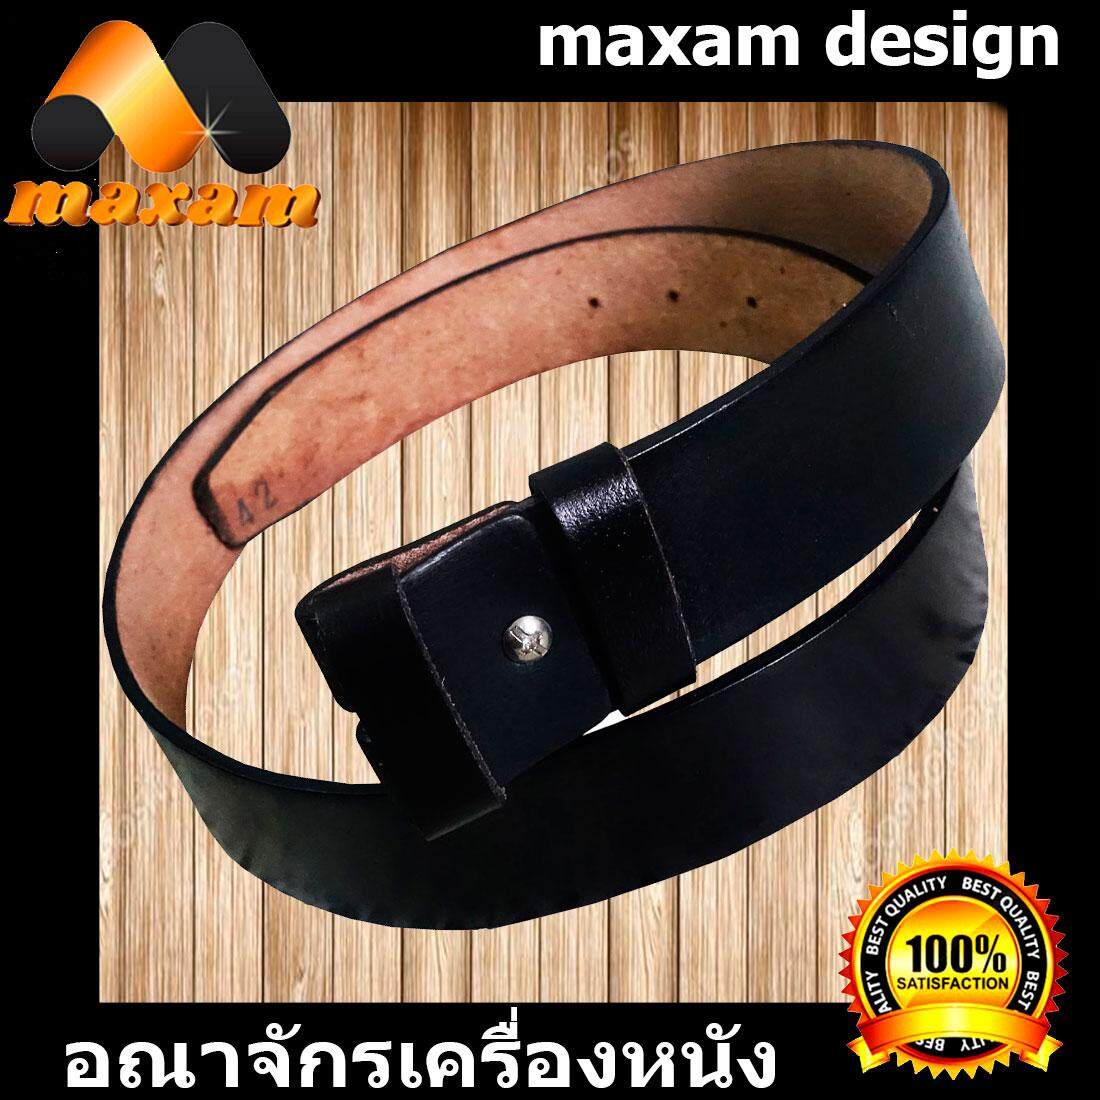 maxam design  ต้องใช้หนังแท้สิ! Genuine Cowhide Leather ใช้ของแท้ ใช้ทน ใช้นานใด้หลายปี นิศิตนักศึกษาชอบใช้  สายเข็มขัดหนังวัวอย่างแท้ๆ ยาวตลอดเส้น  52 นิ้ว เหมาะสำหรับท่านที่มีเอว 44-45-46-47 นิ้ว  สีดำ   maxam design